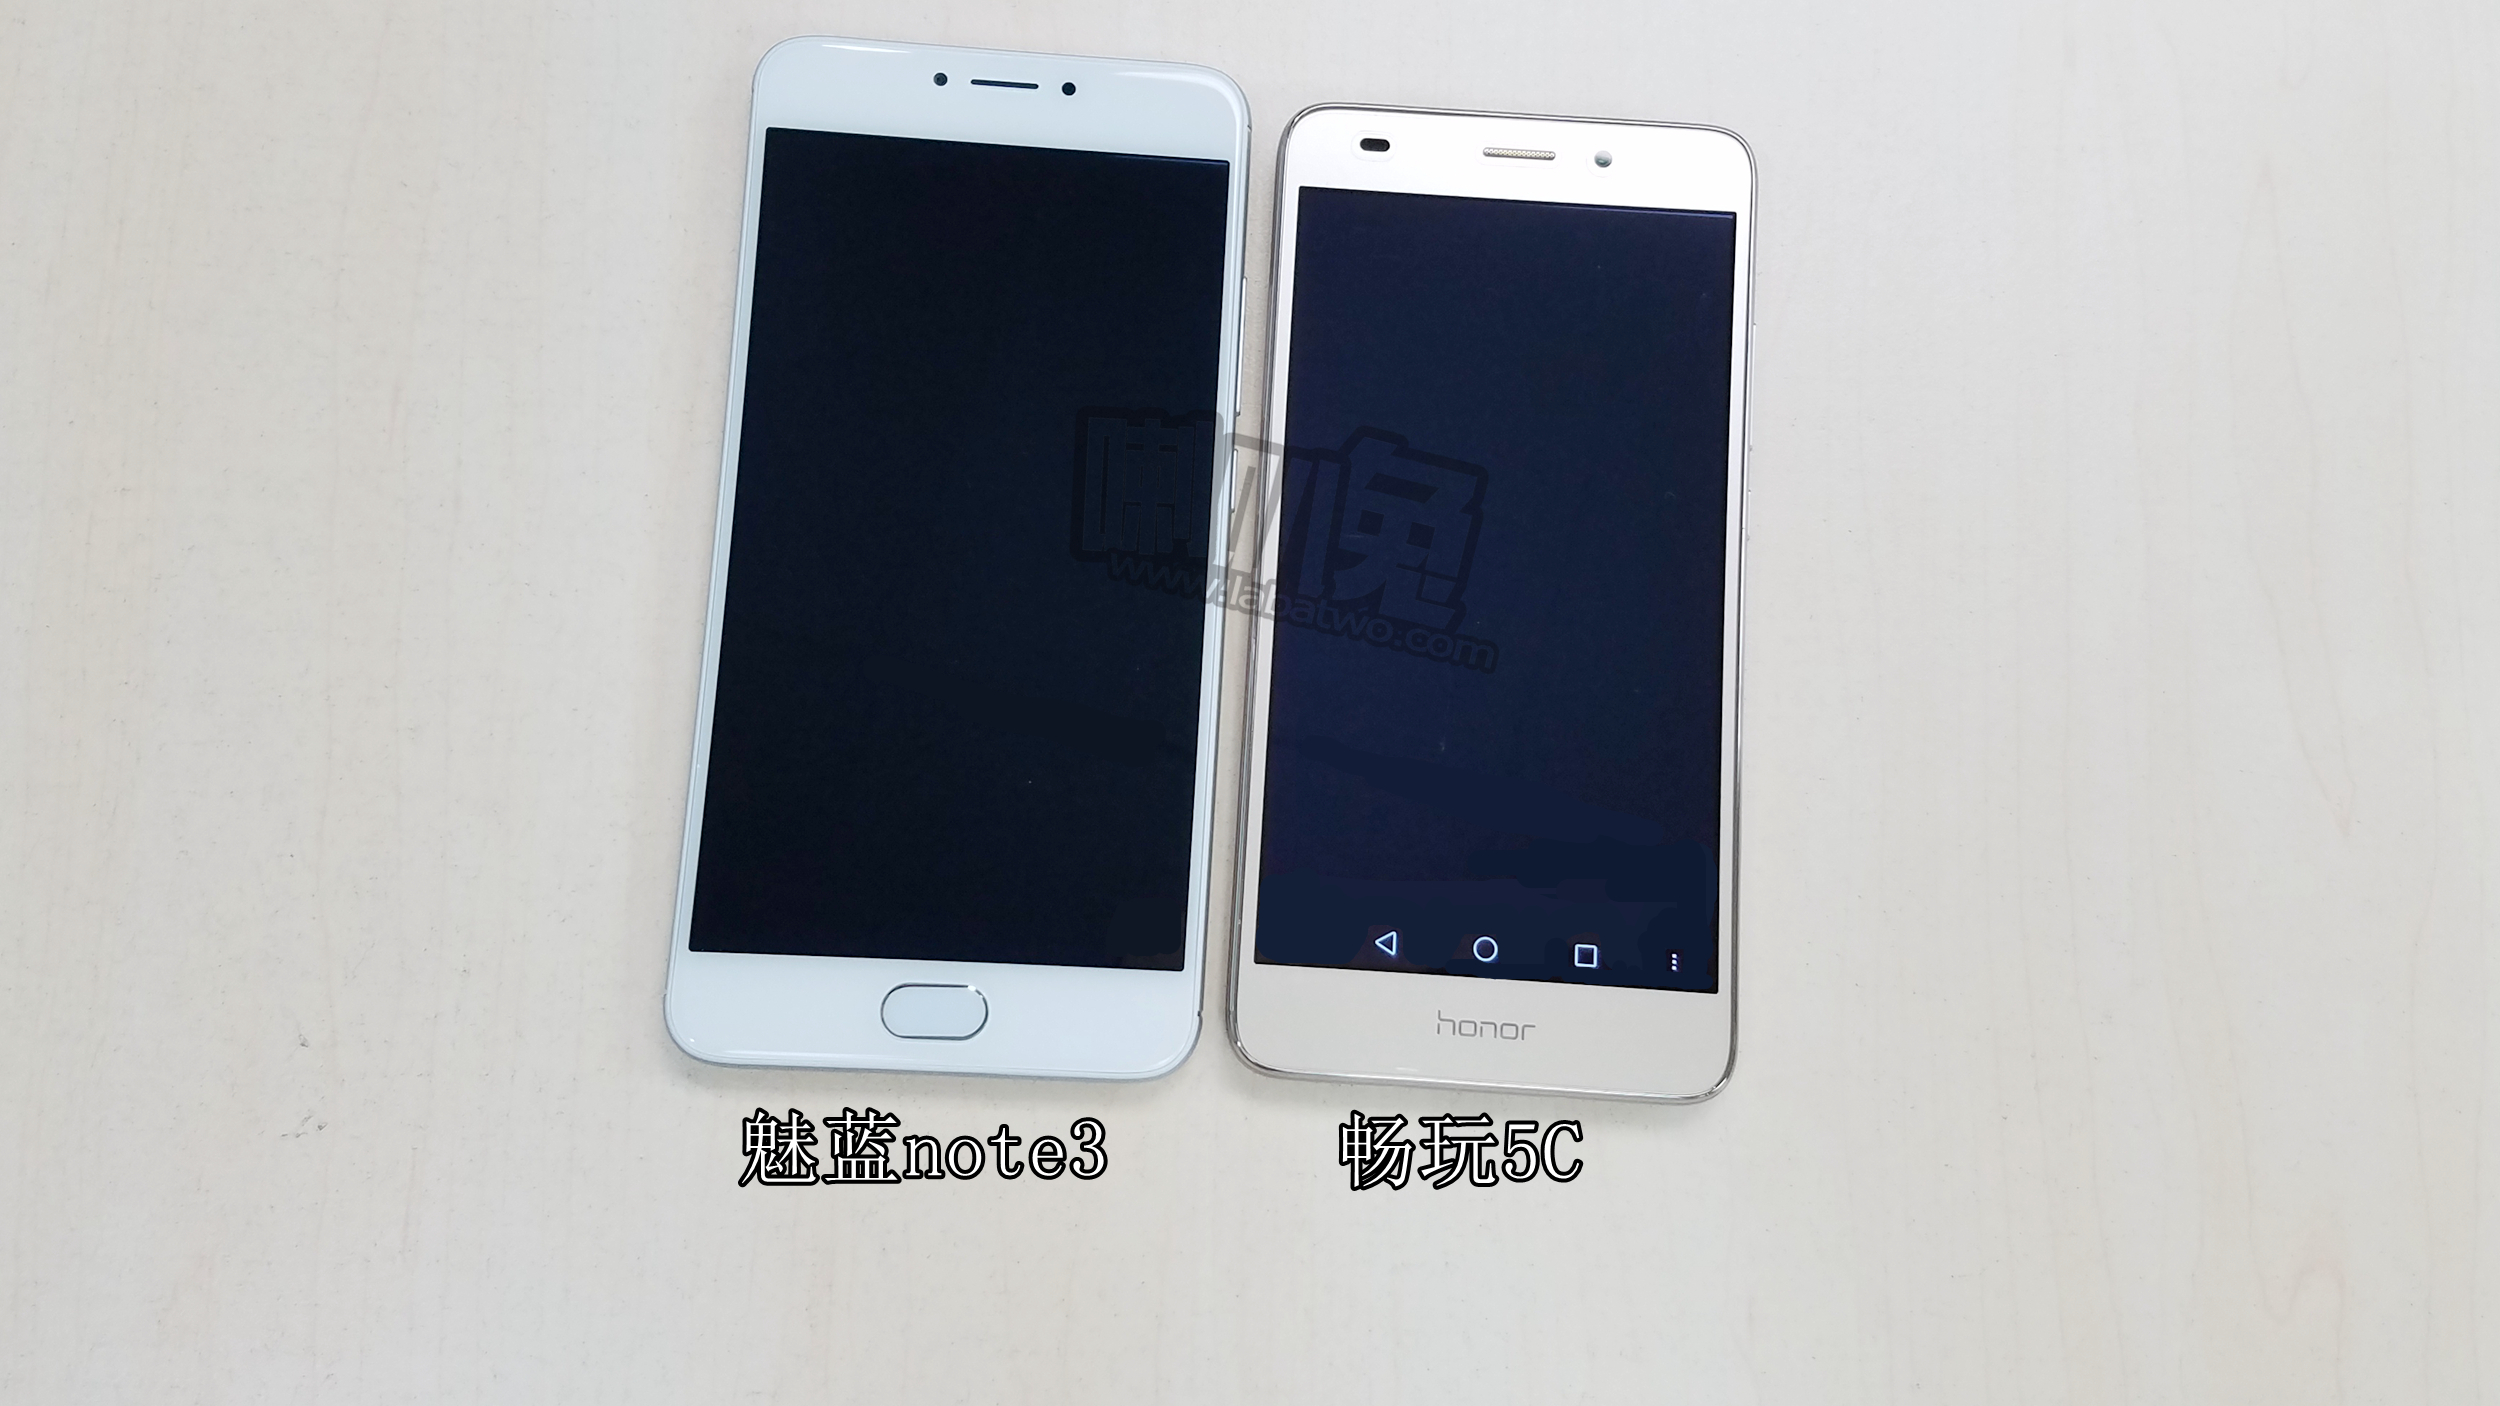 魅蓝note3和华为荣耀畅玩5c屏幕显示对比图集